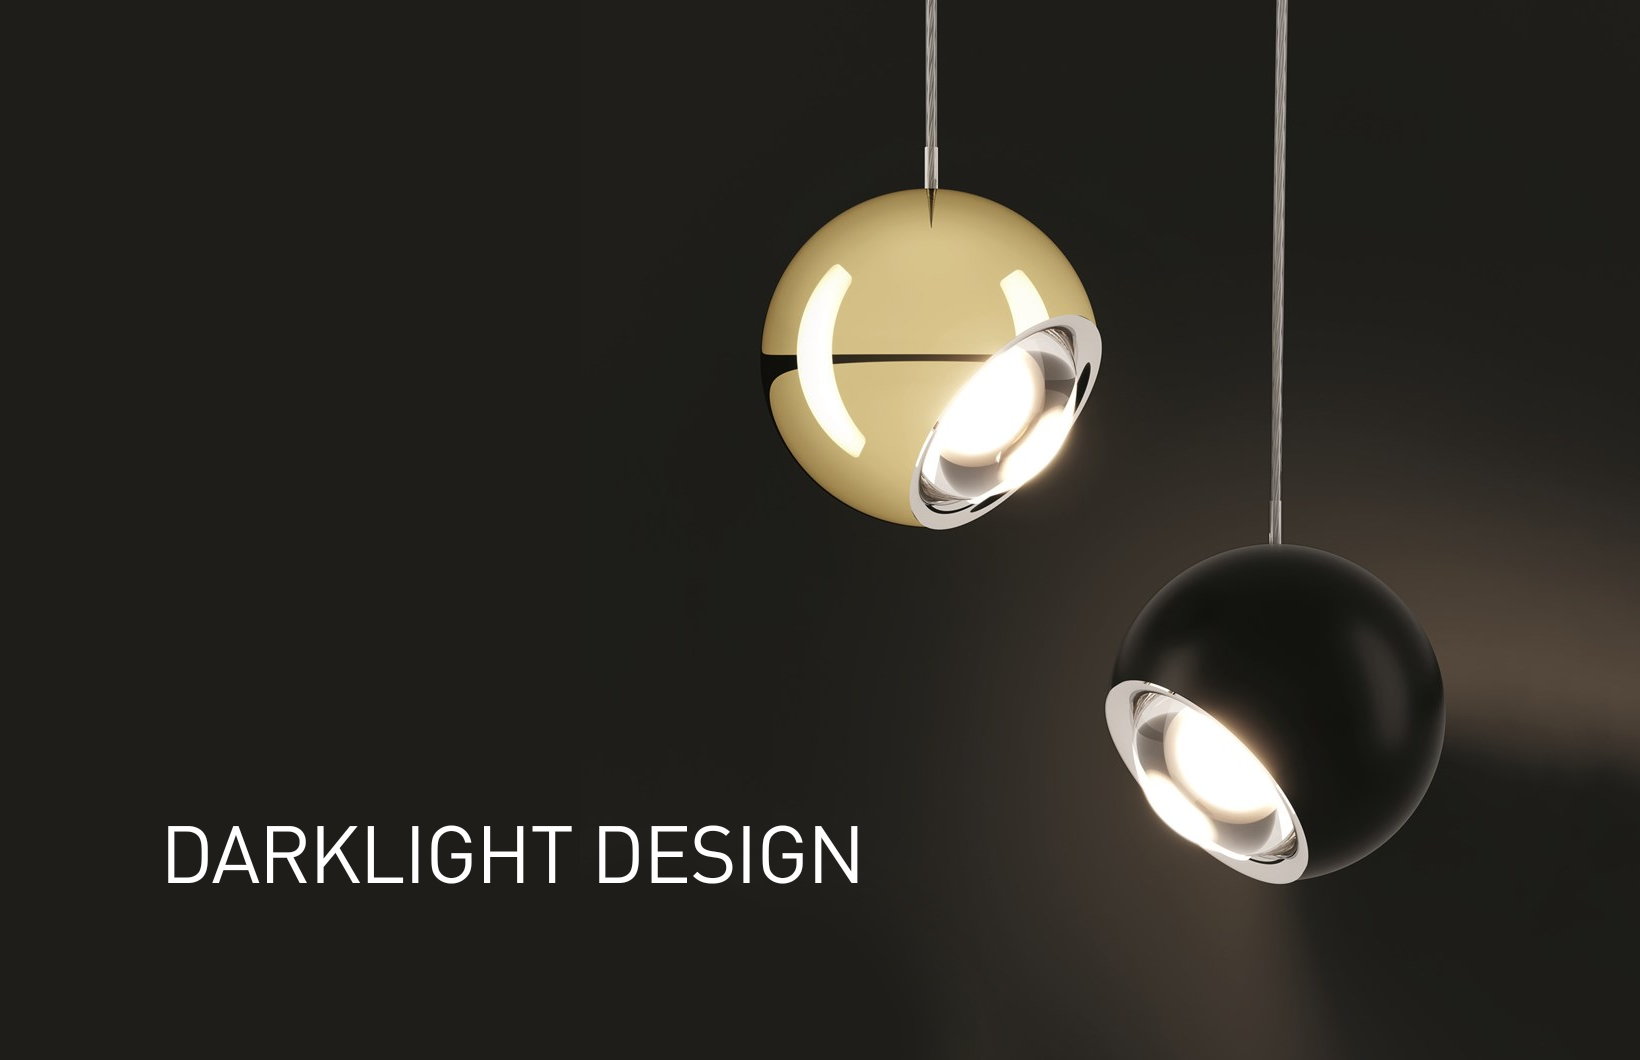 Darklight Design